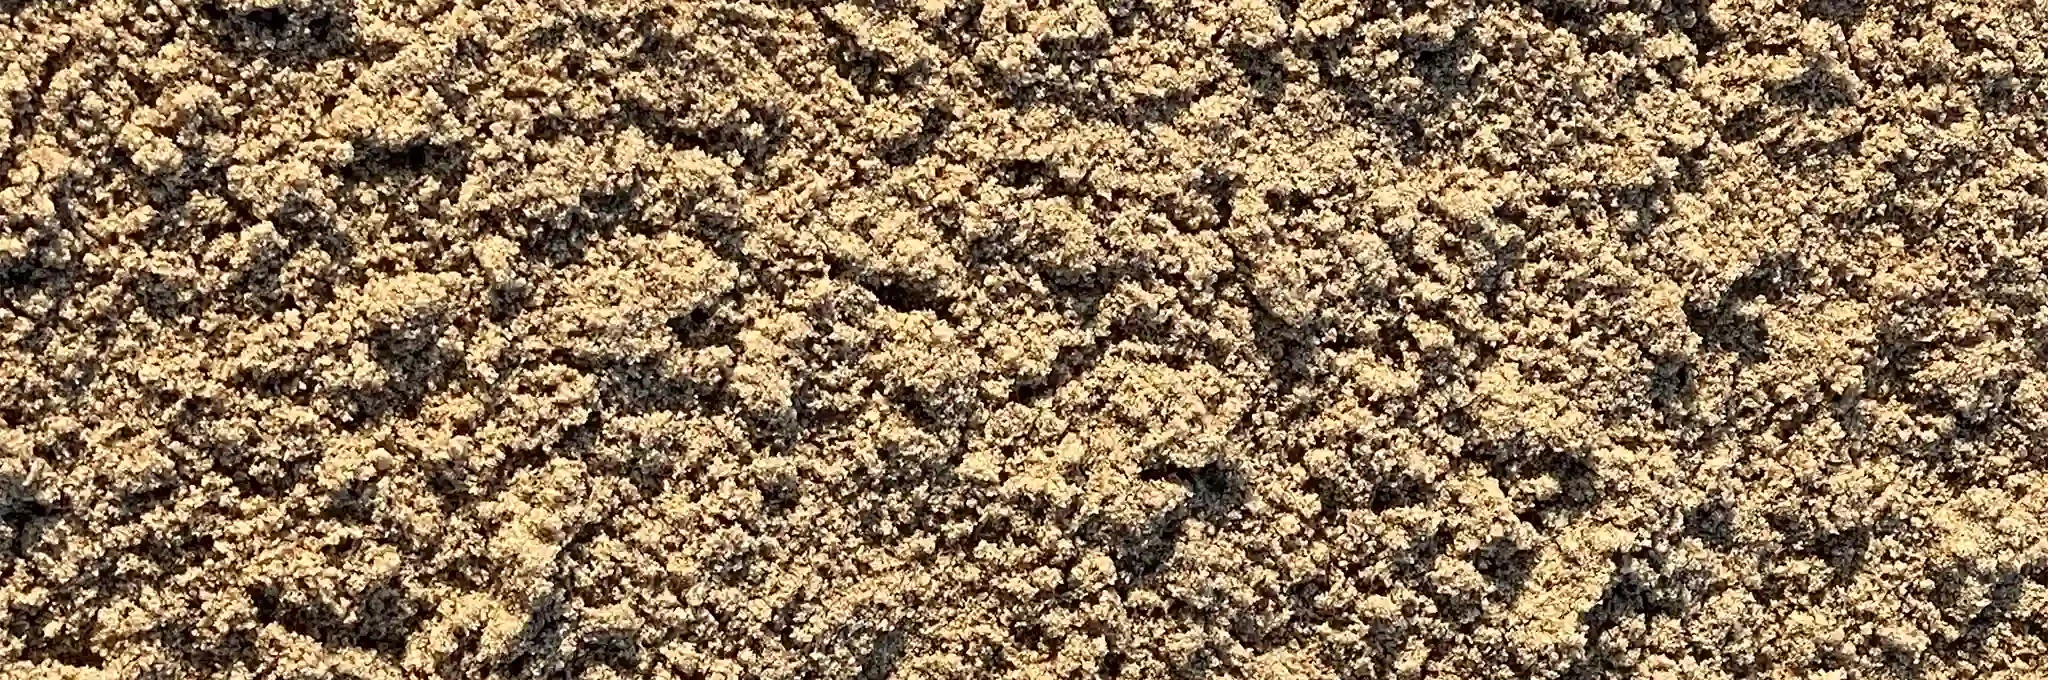 A close-up view of greensmix blend sand.